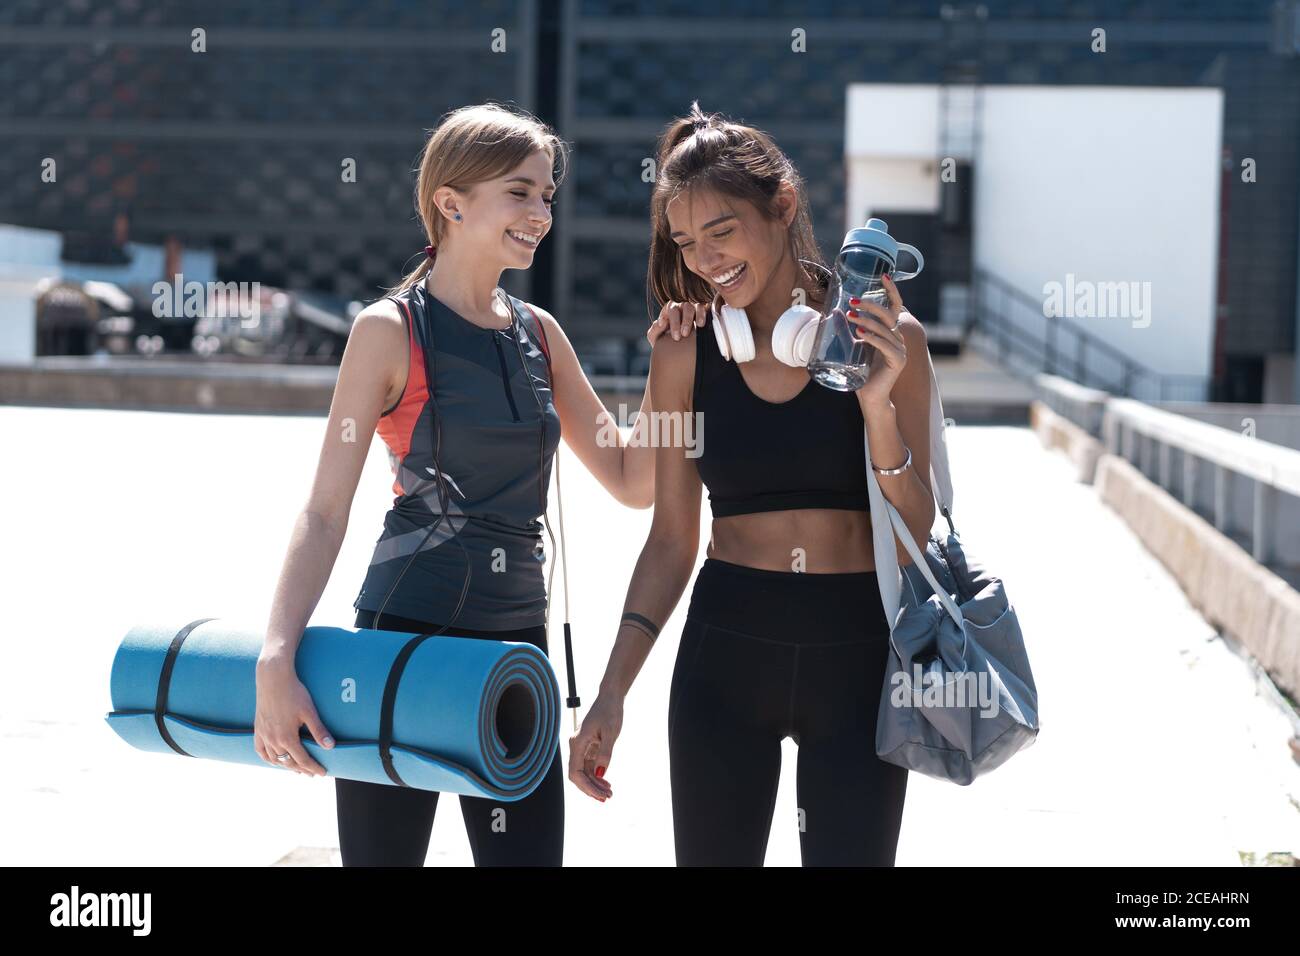 Deux jeunes femmes athlétiques souriantes qui marchent ensemble à l'extérieur après un entraînement sportif, qui parlent et s'embrasent les unes les autres. Banque D'Images